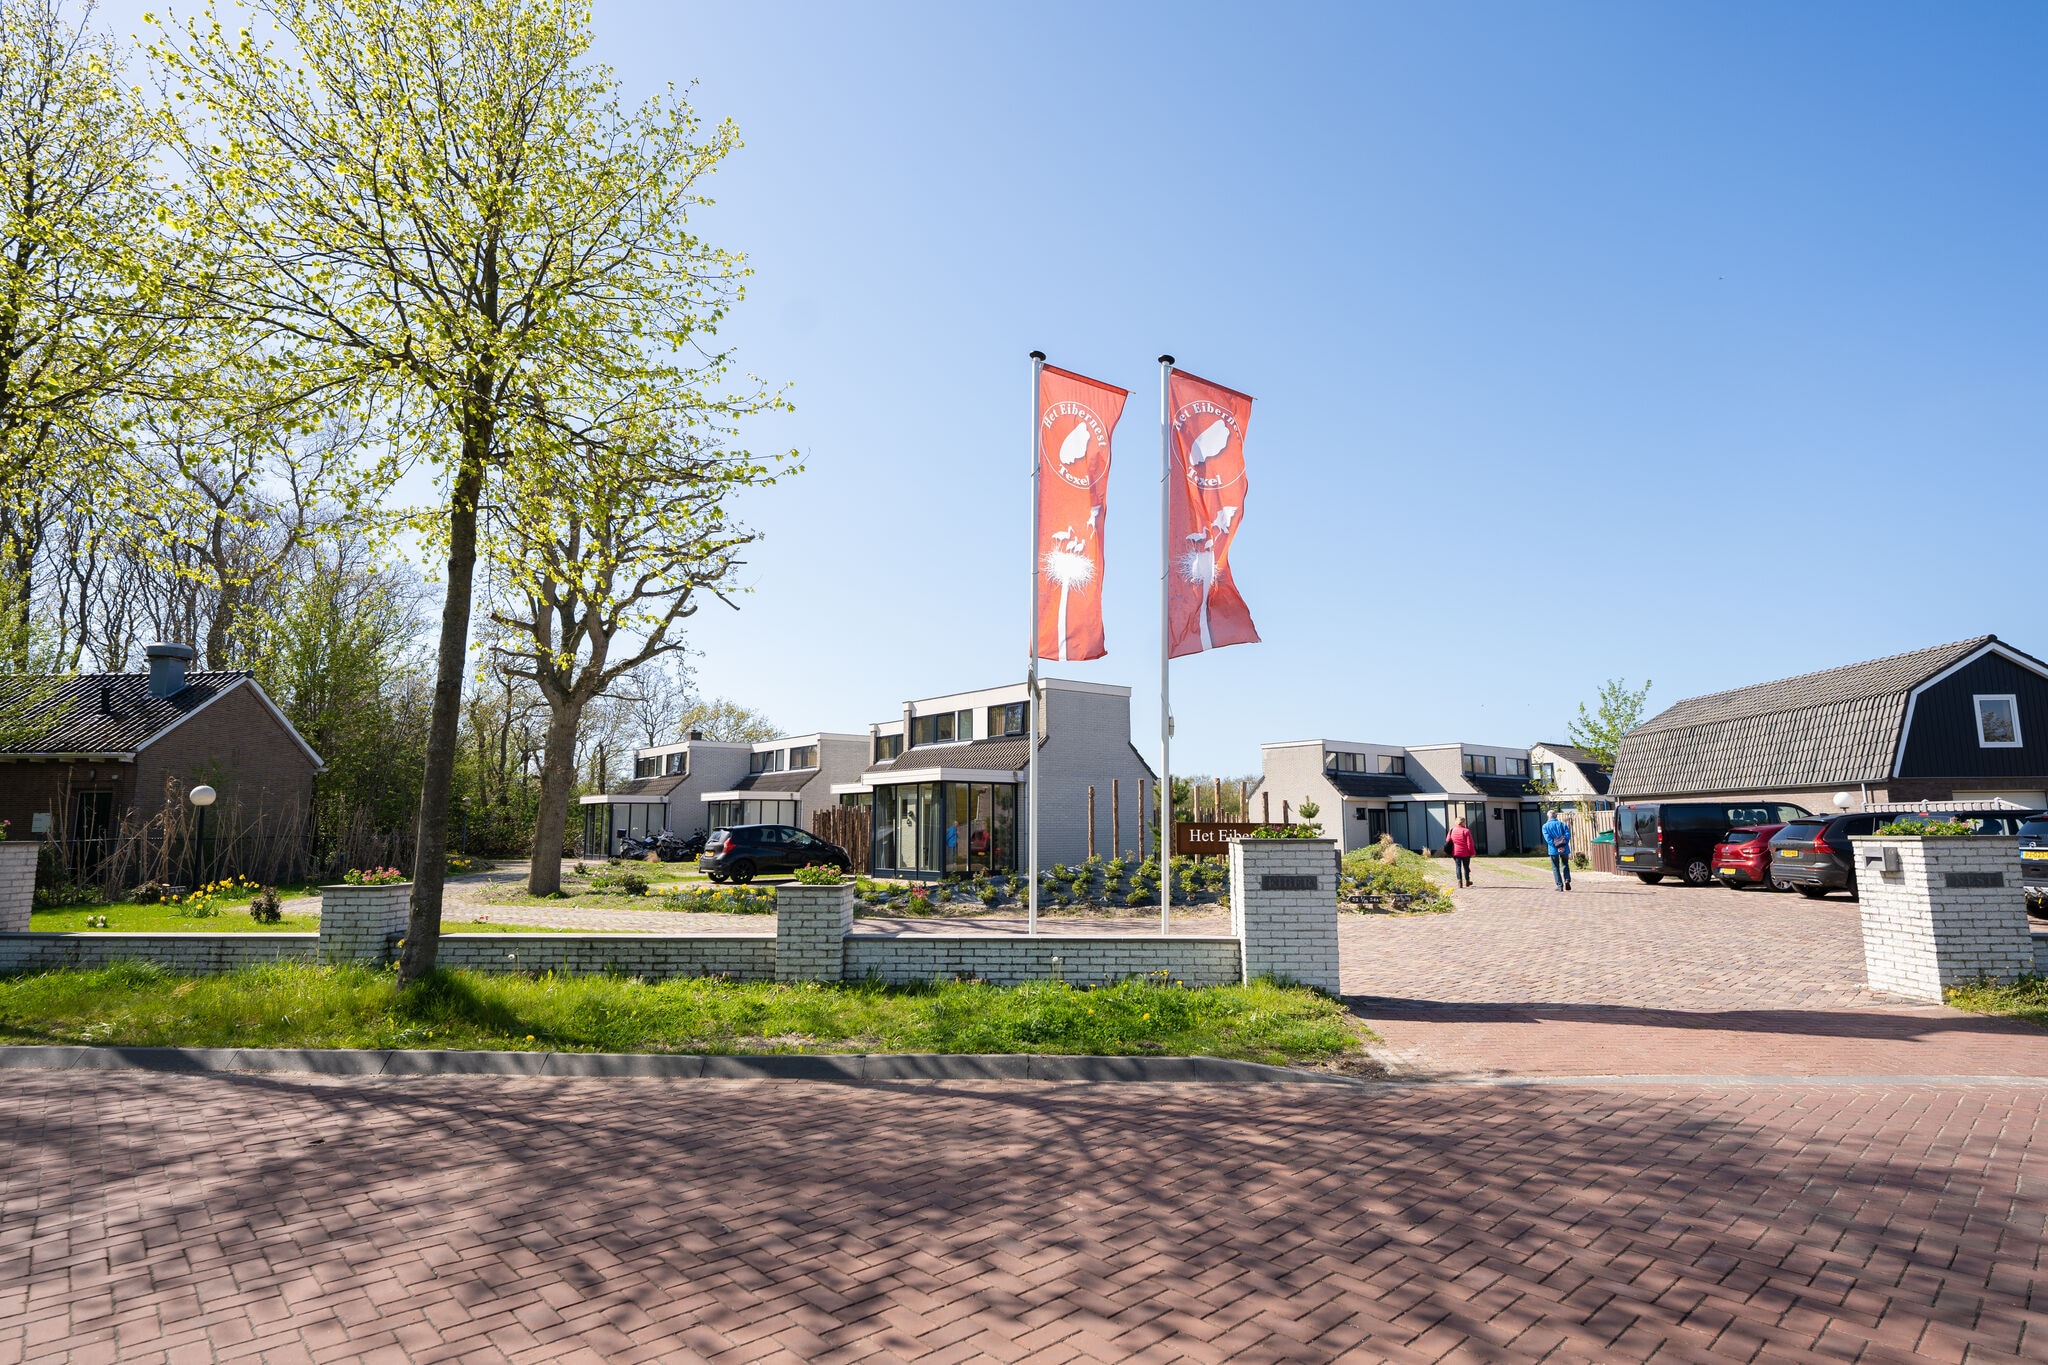 Maison confortable avec une vue imprenable sur un parc de vacances situé à Texel